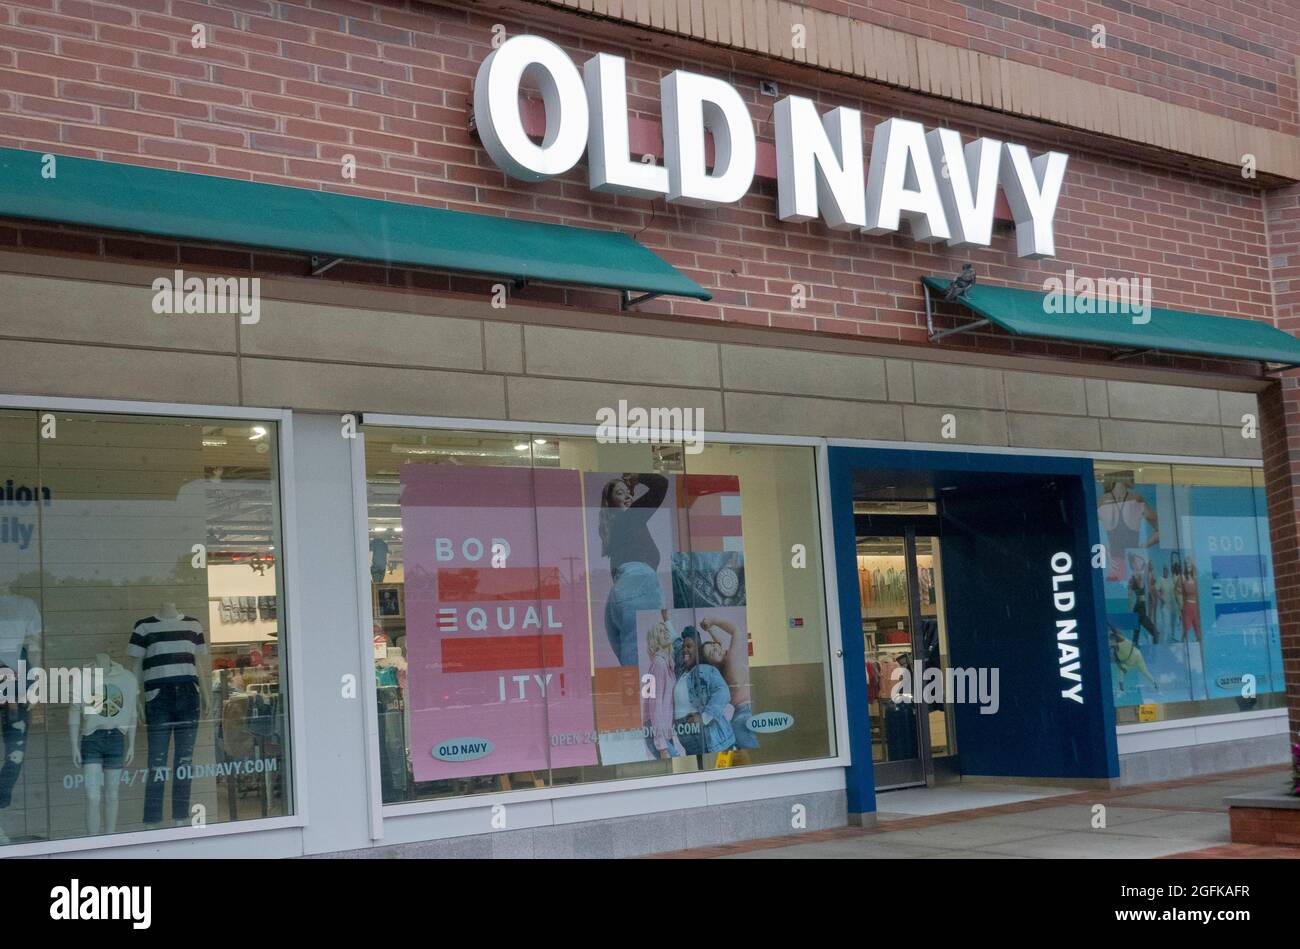 Vetrine pubblicitarie in un negozio Old Navy promozione Body Equality. A Bayside, Queens, New york. Foto Stock